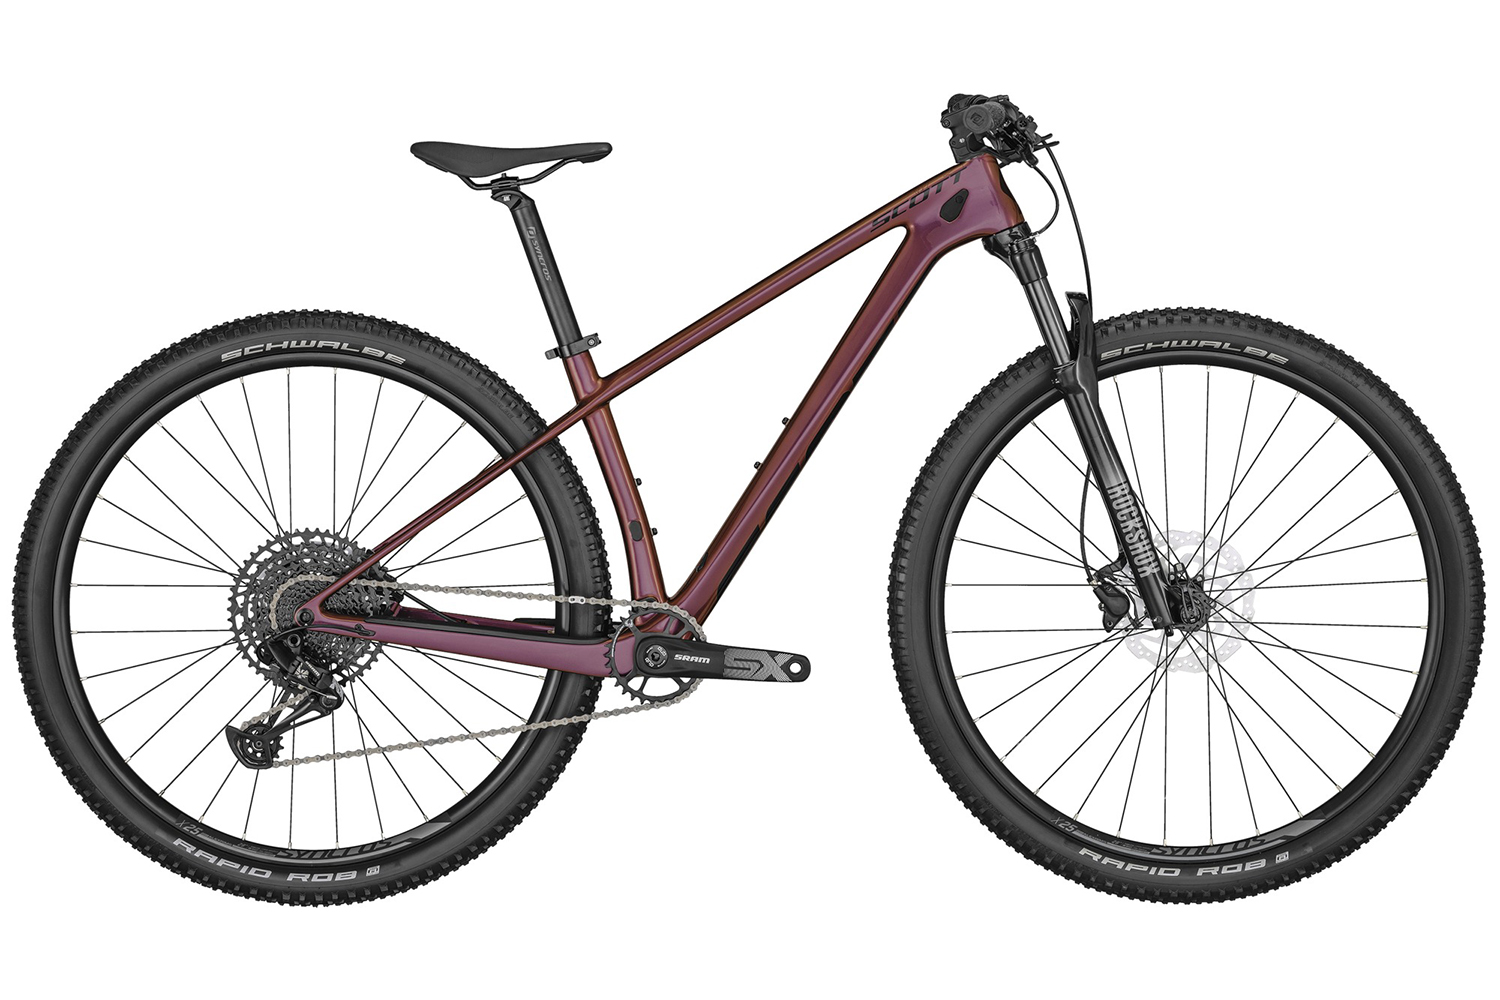  Отзывы о Горном велосипеде Scott Contessa Scale 920 2022